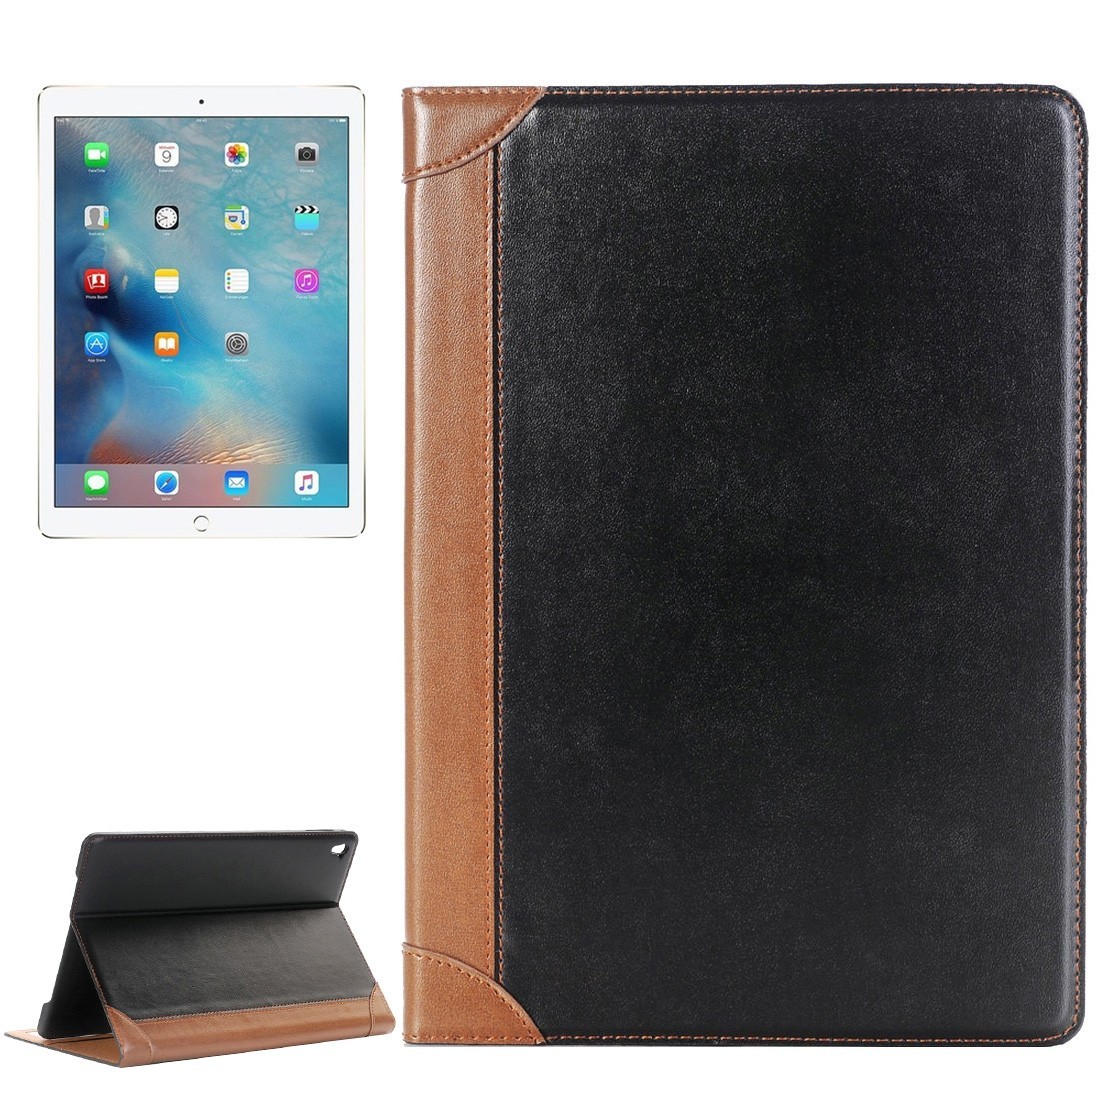 Кожаный чехол в стиле книжки для iPad Pro 9.7 (черный)